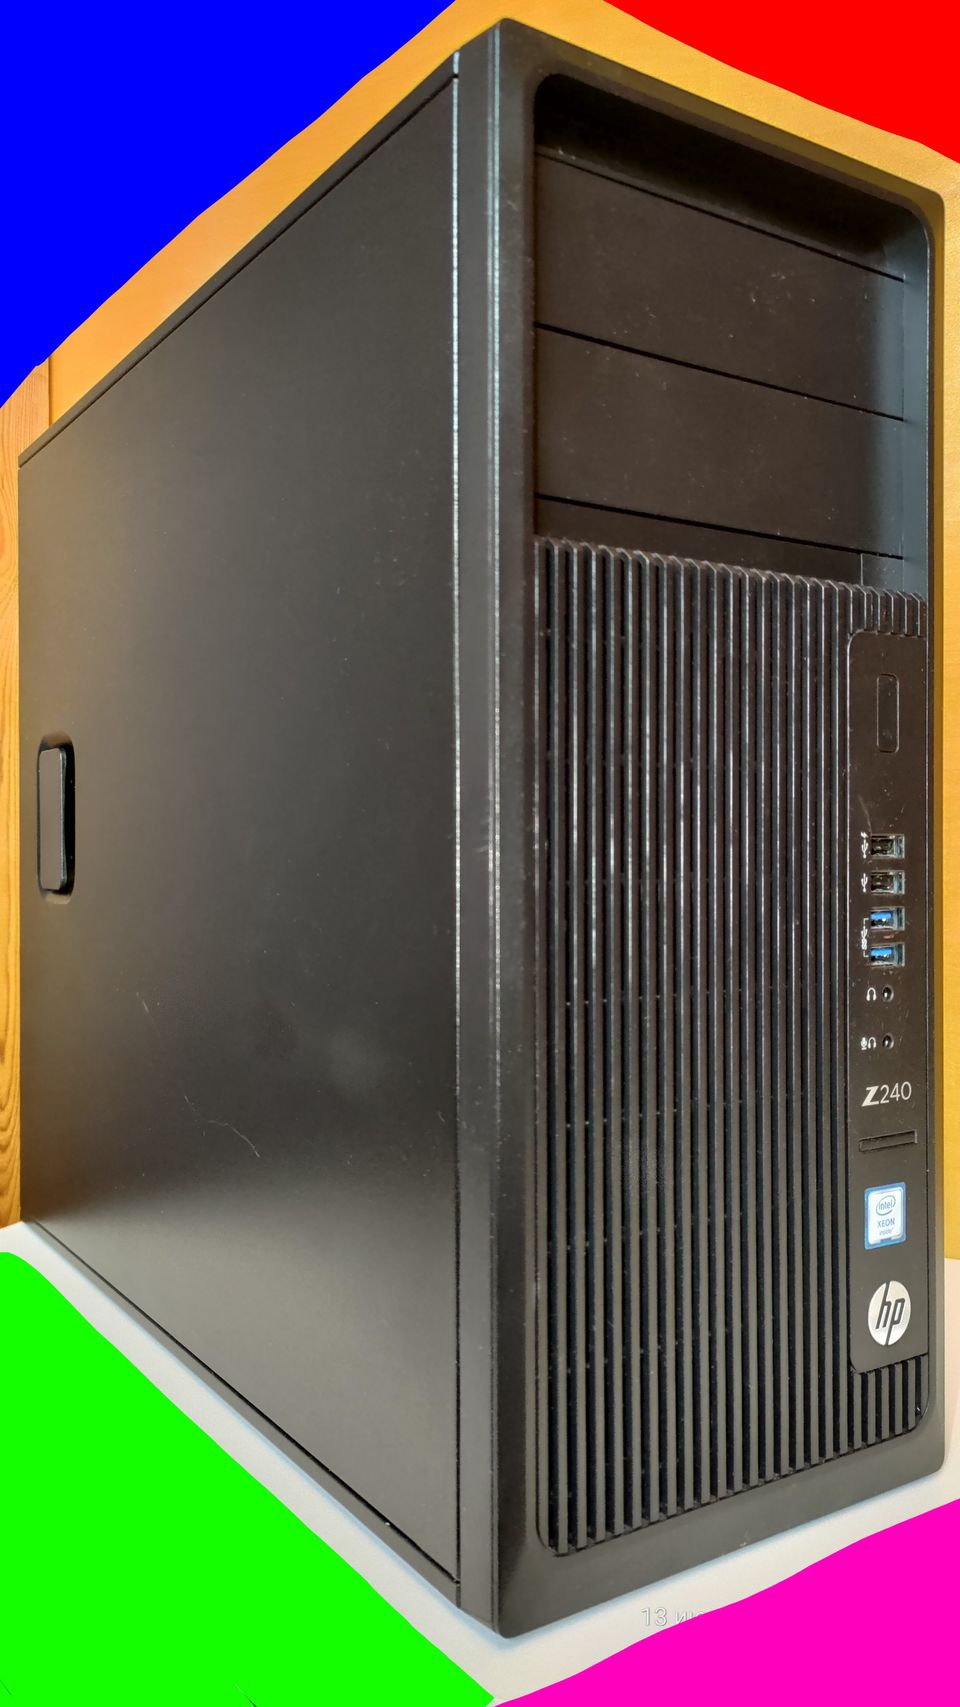 HP Z240 Tower Workstation / Xeon E3- 1225v5/ 16gb DDR4/ 500 SSD/ GTX 1060 6gb